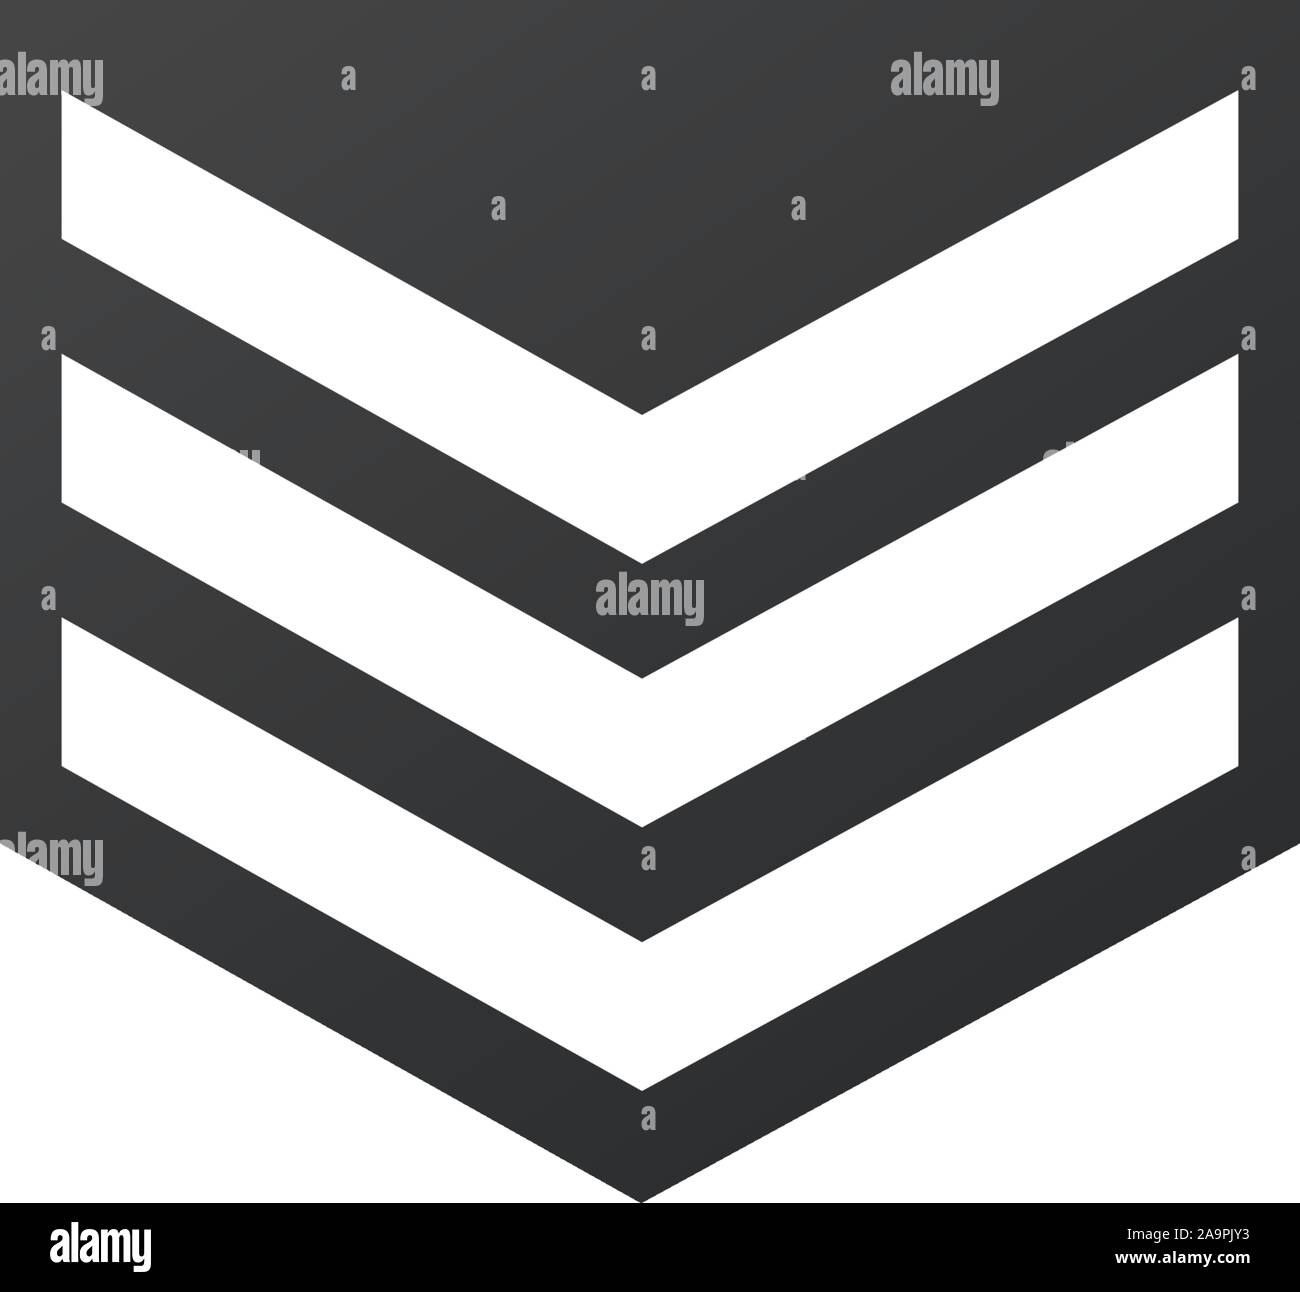 Abzeichen militärischen Symbol, Armee Chevron. Vektor Illustration auf weißem Hintergrund. Stock Vektor